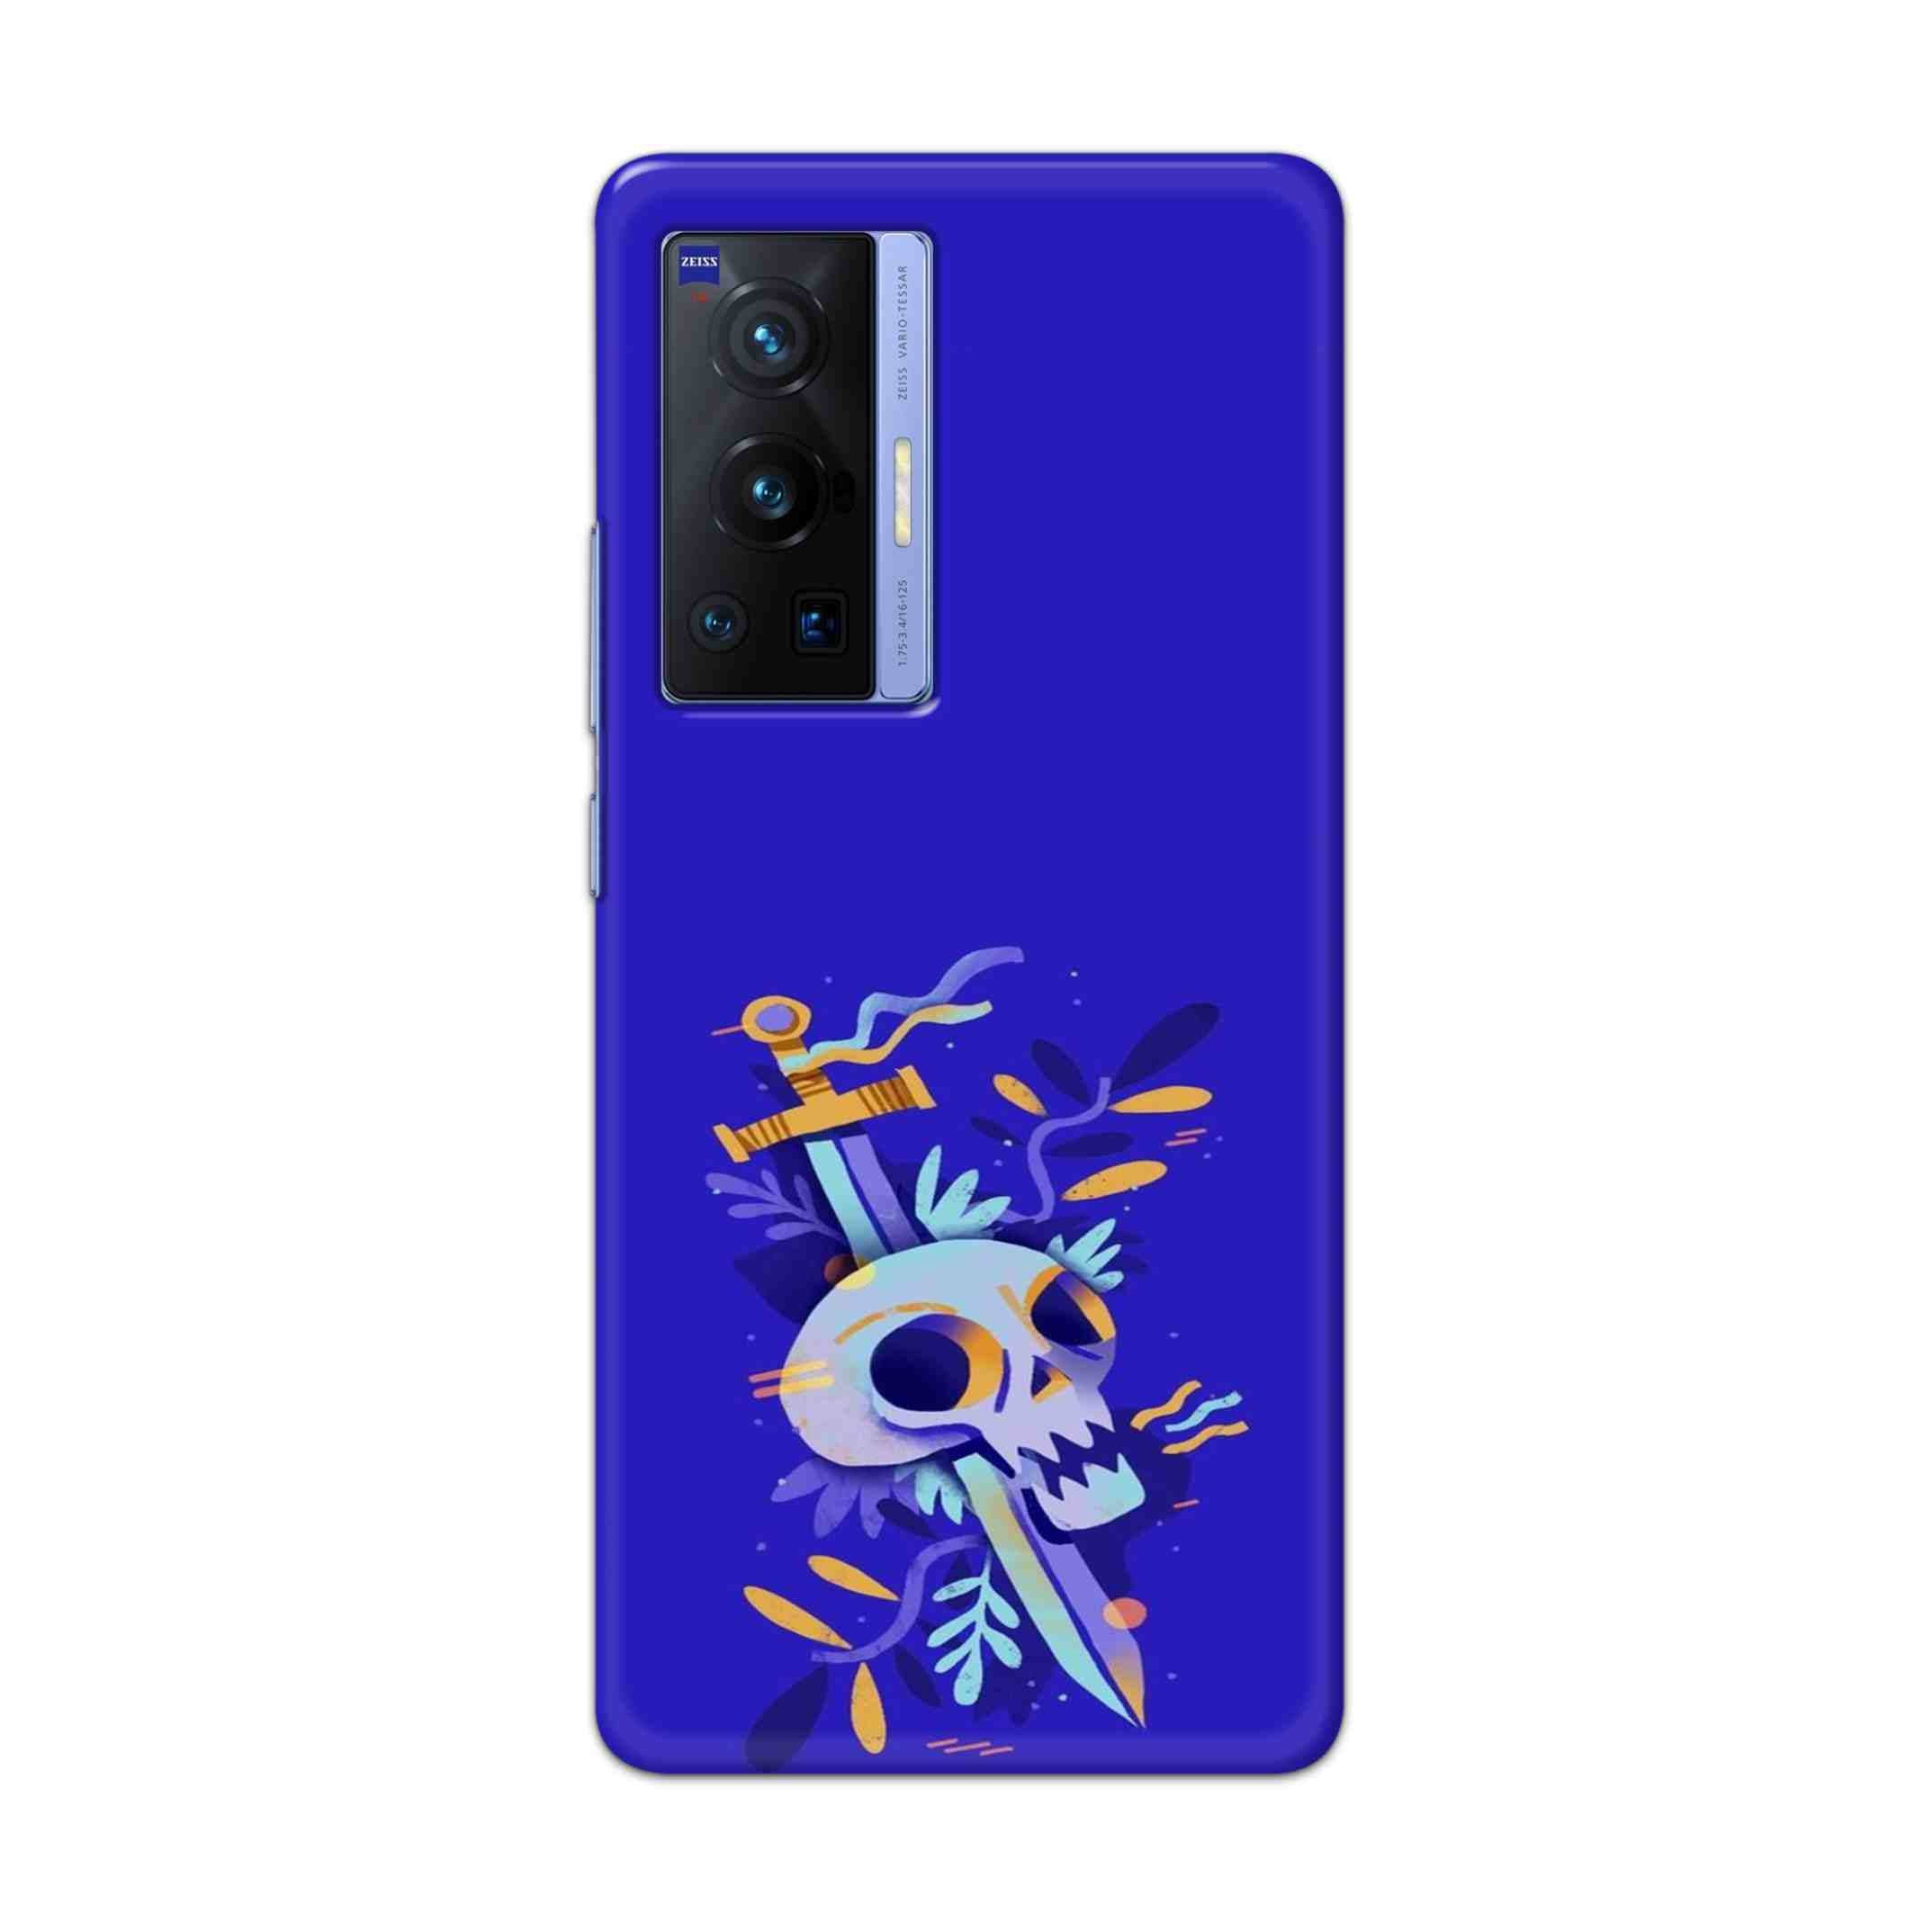 Buy Blue Skull Hard Back Mobile Phone Case Cover For Vivo X70 Pro Online